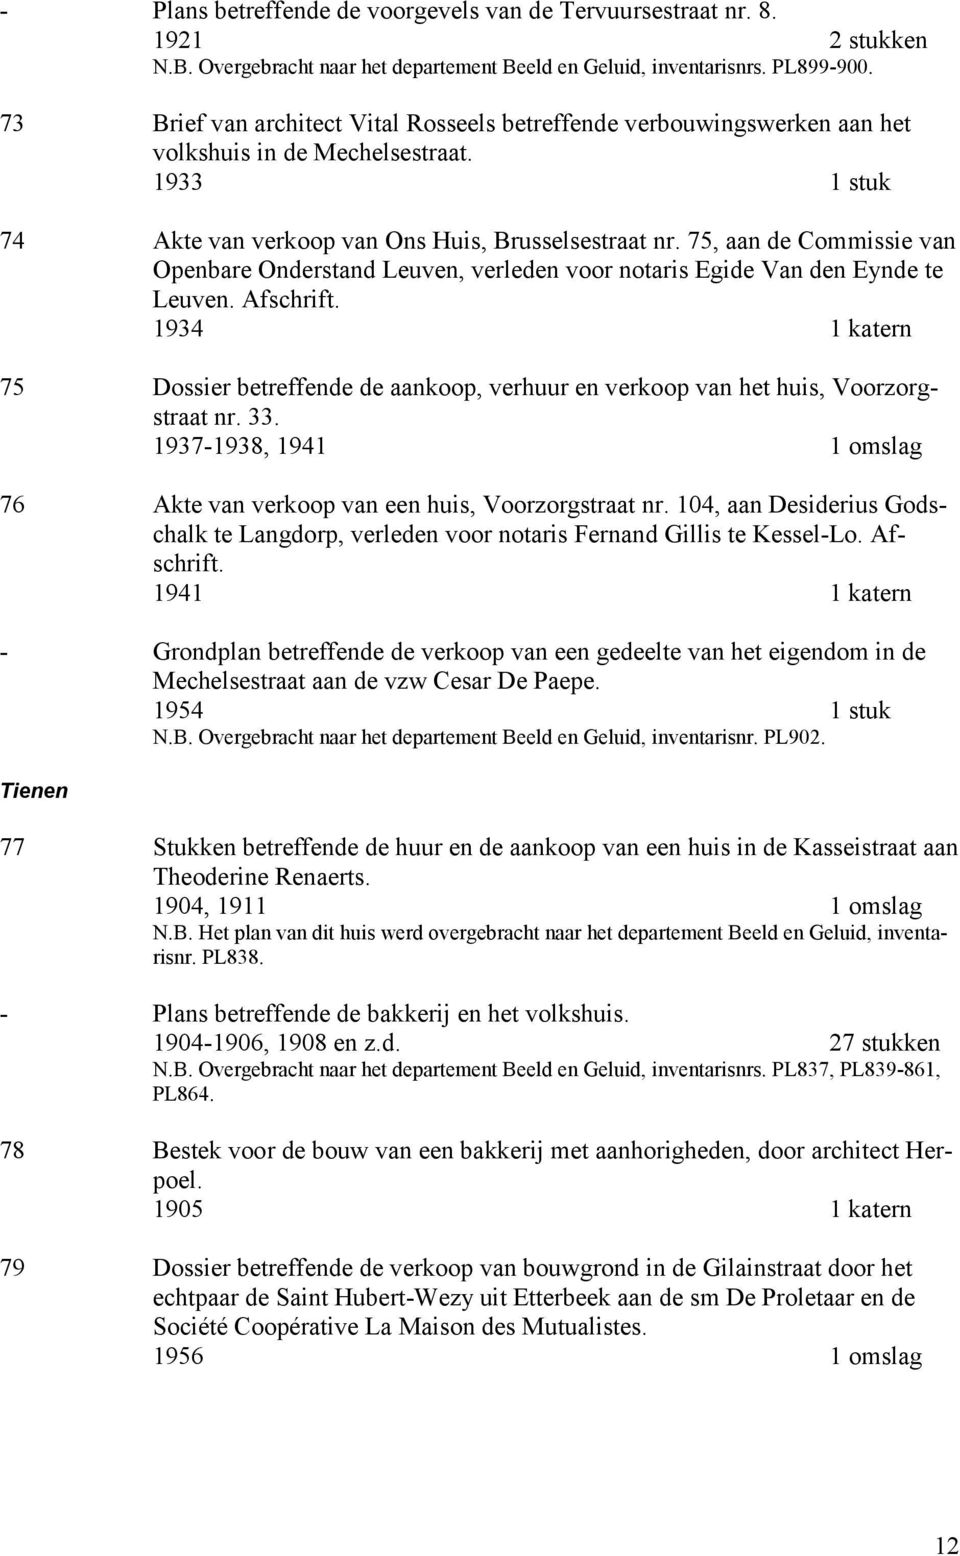 75, aan de Commissie van Openbare Onderstand Leuven, verleden voor notaris Egide Van den Eynde te Leuven. Afschrift.